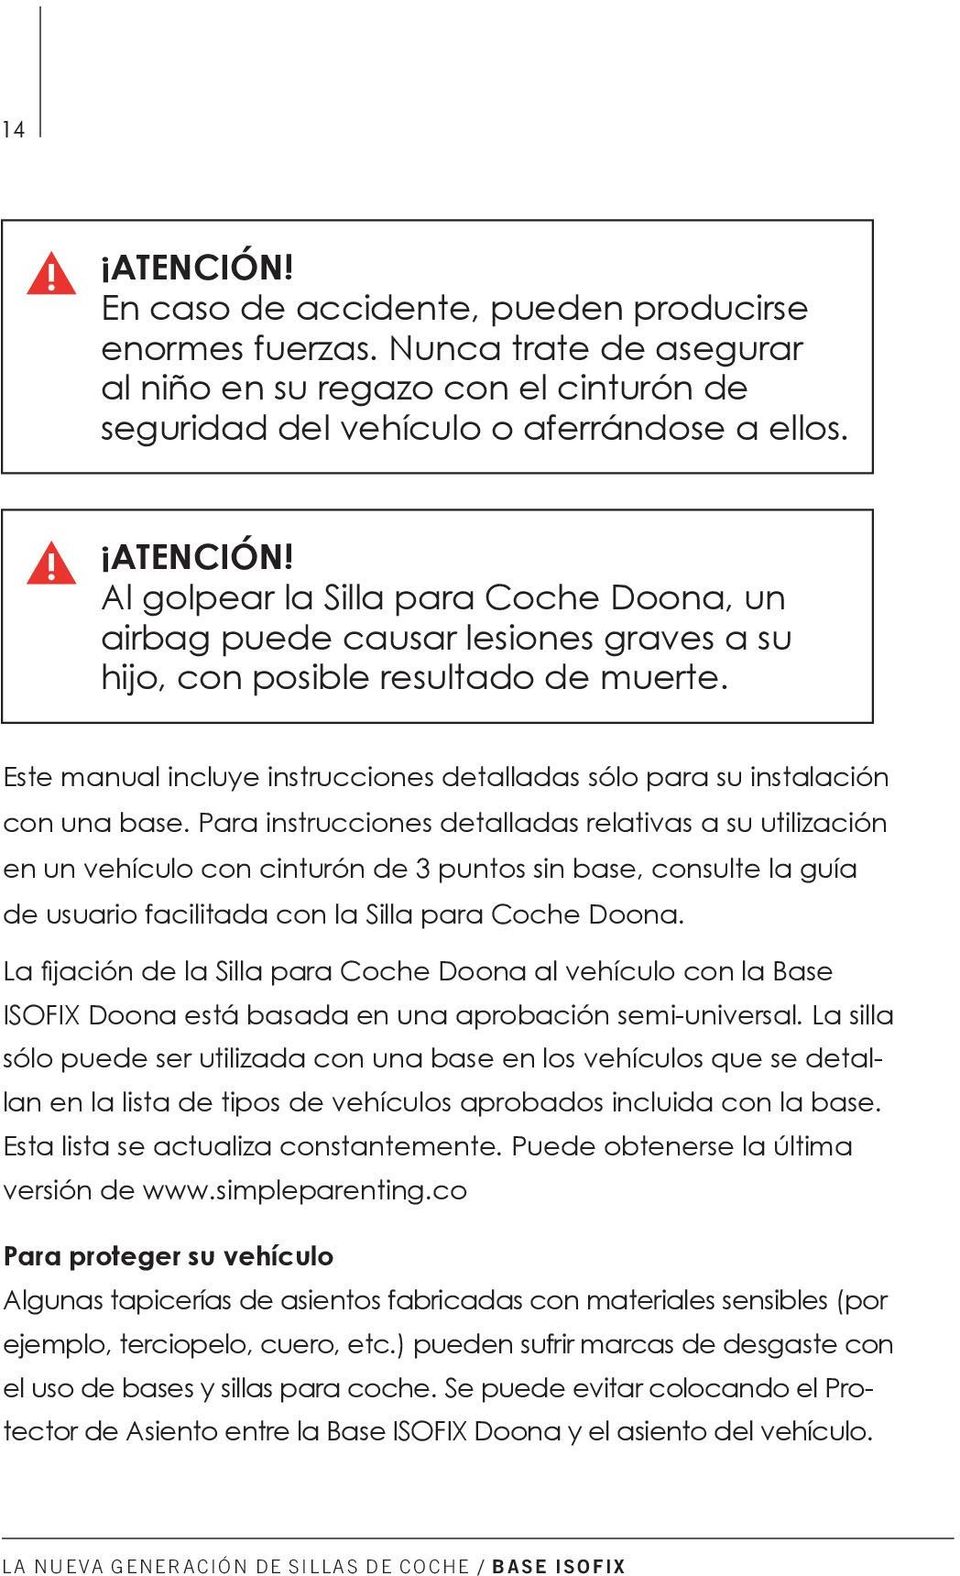 Para instrucciones detalladas relativas a su utilización en un vehículo con cinturón de 3 puntos sin base, consulte la guía de usuario facilitada con la Silla para Coche Doona.